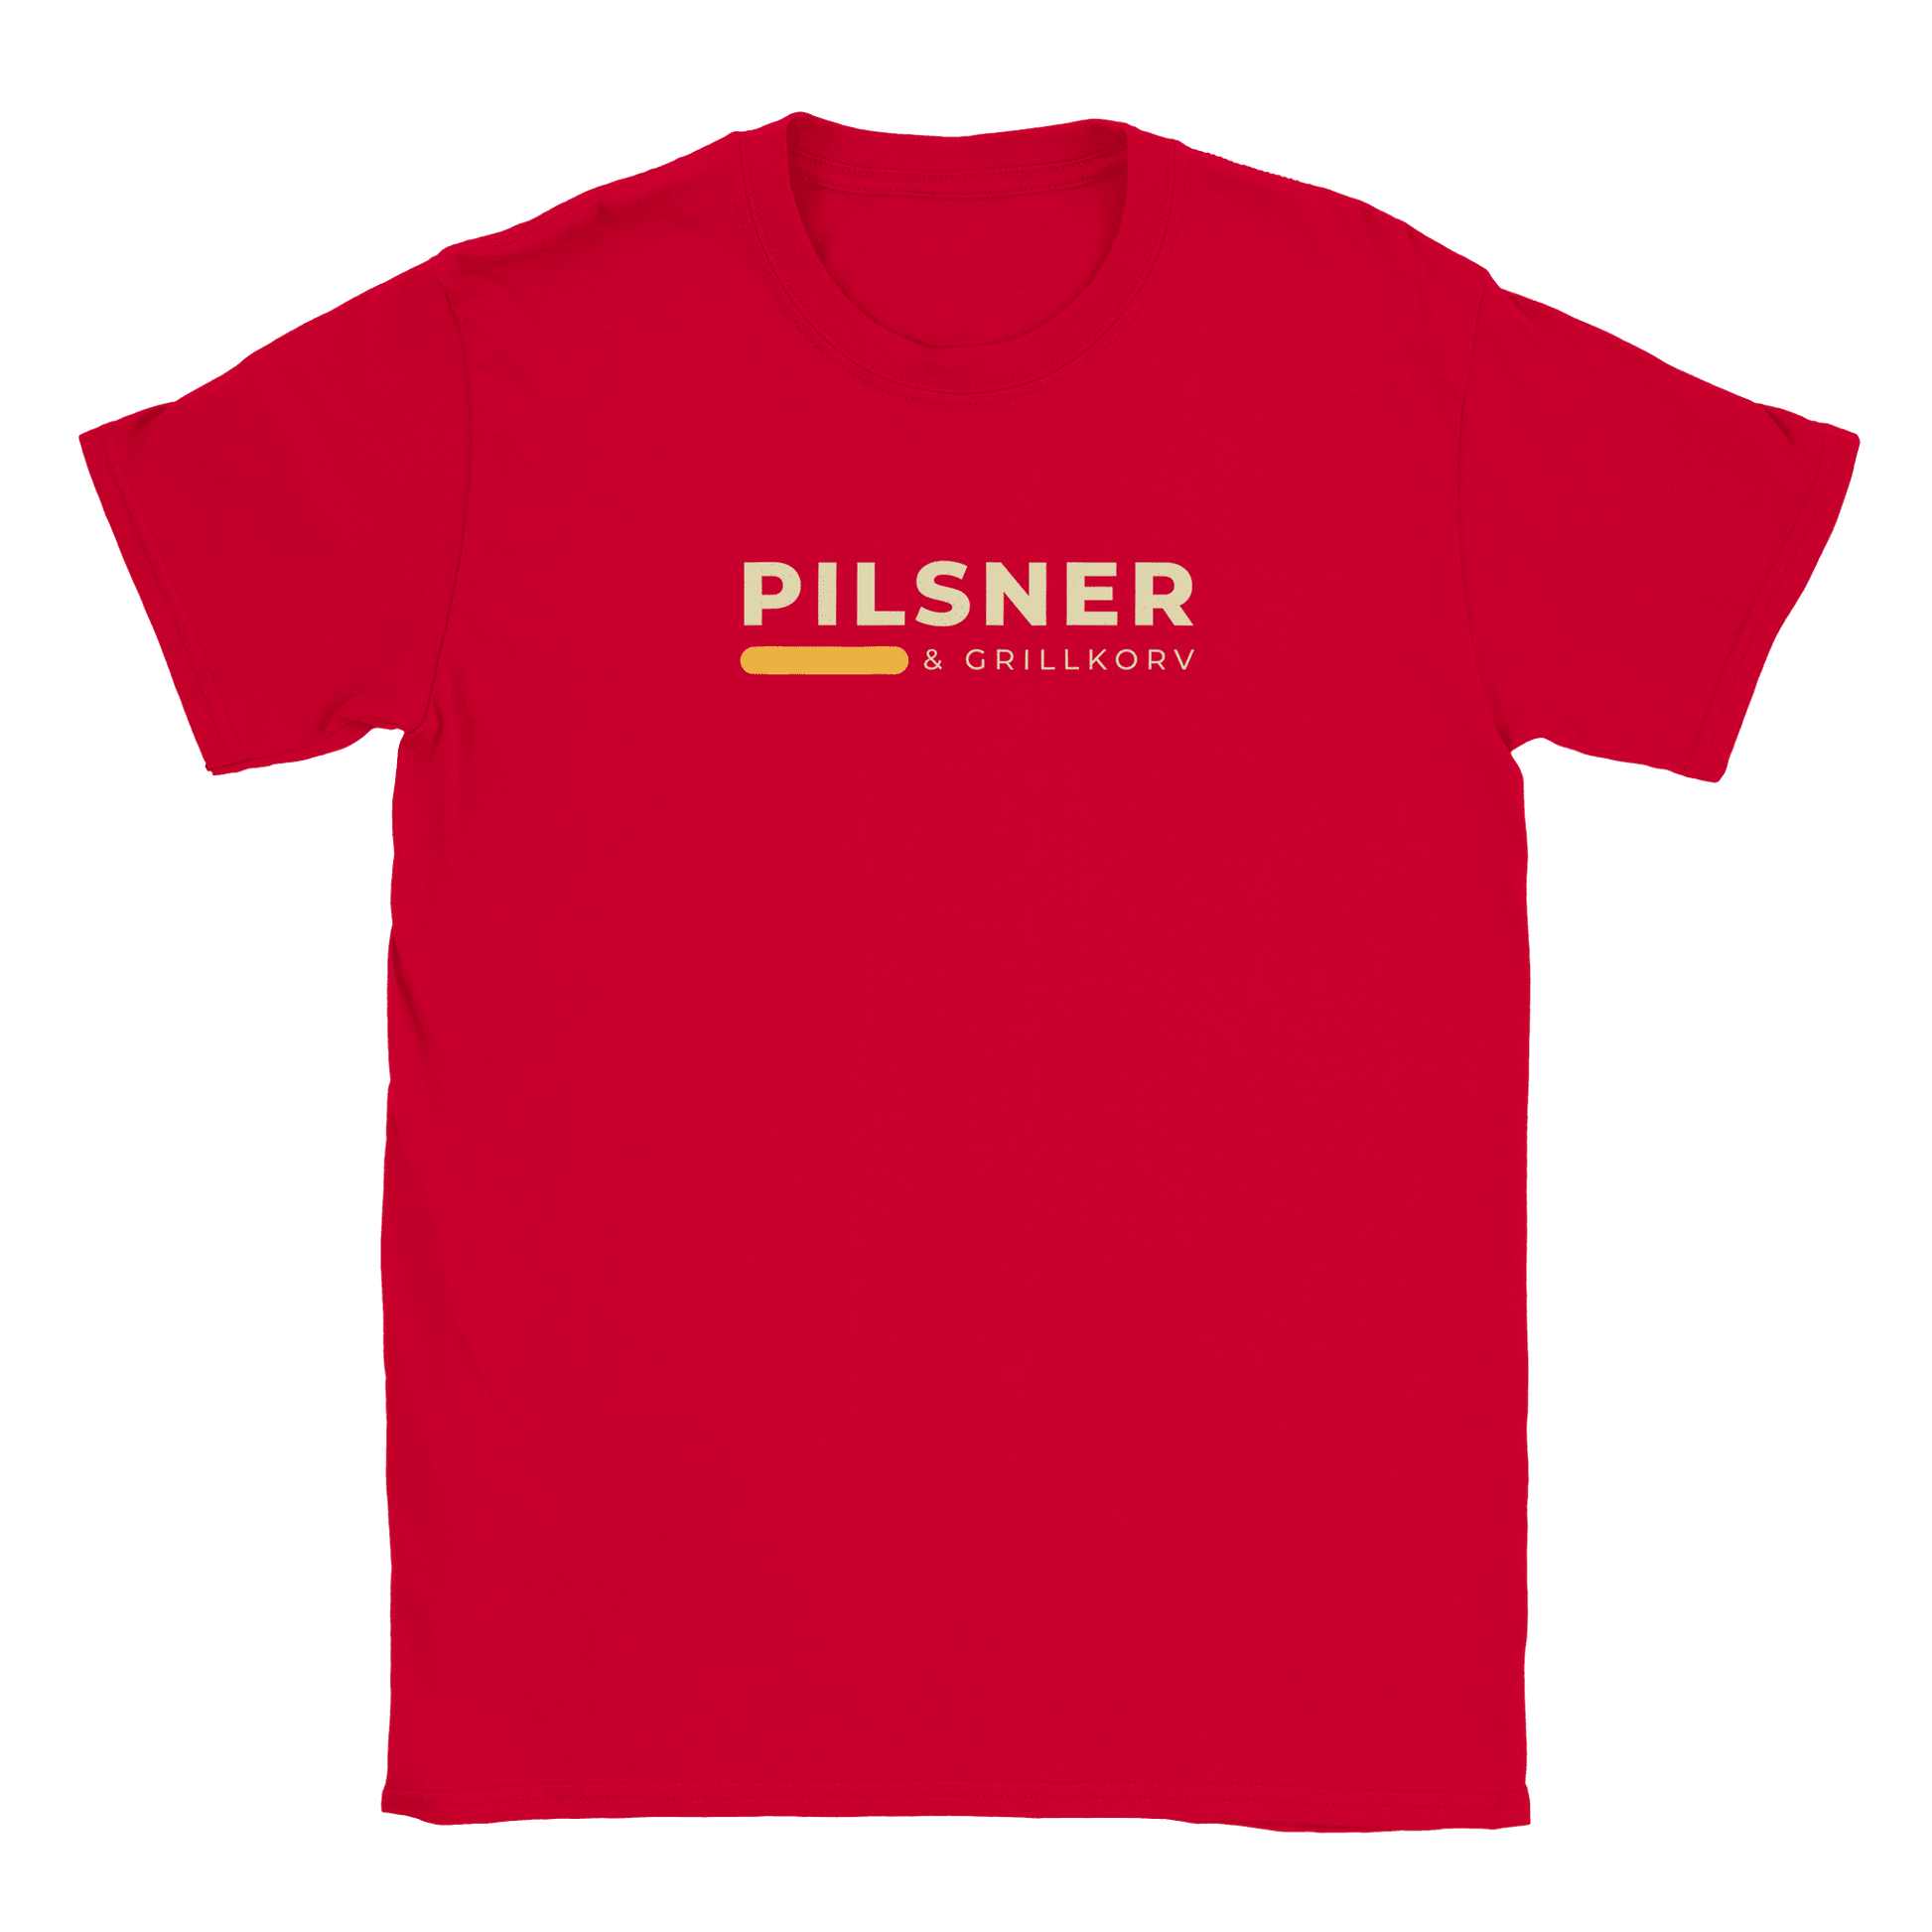 Pilsner och grillkorv - T-shirt Röd